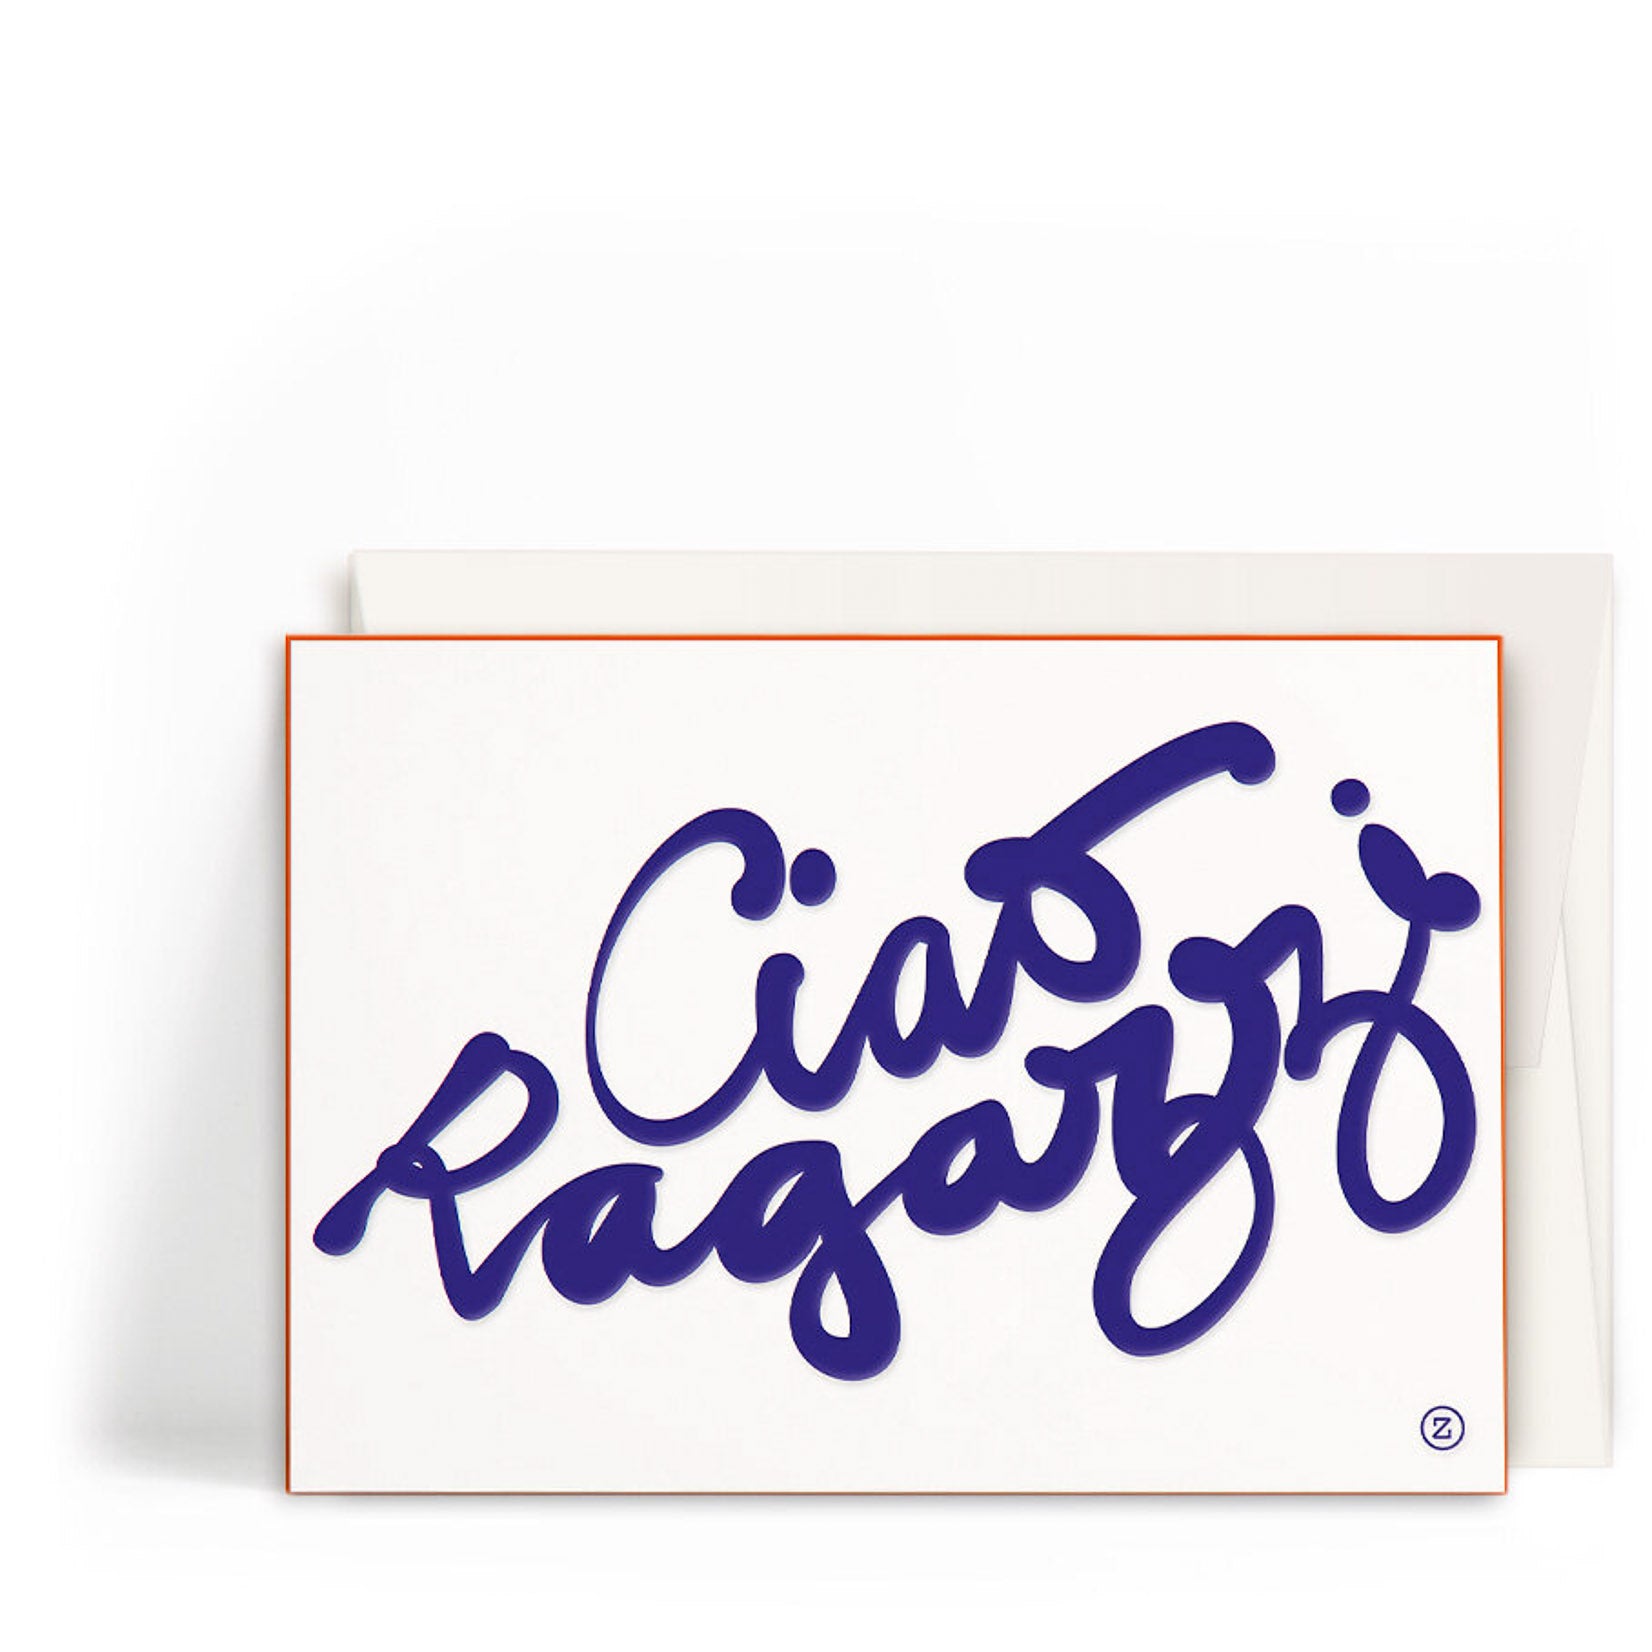 Werkstatt Höflich Letterpress Gestalten Postkarte Ciao Ragazzi